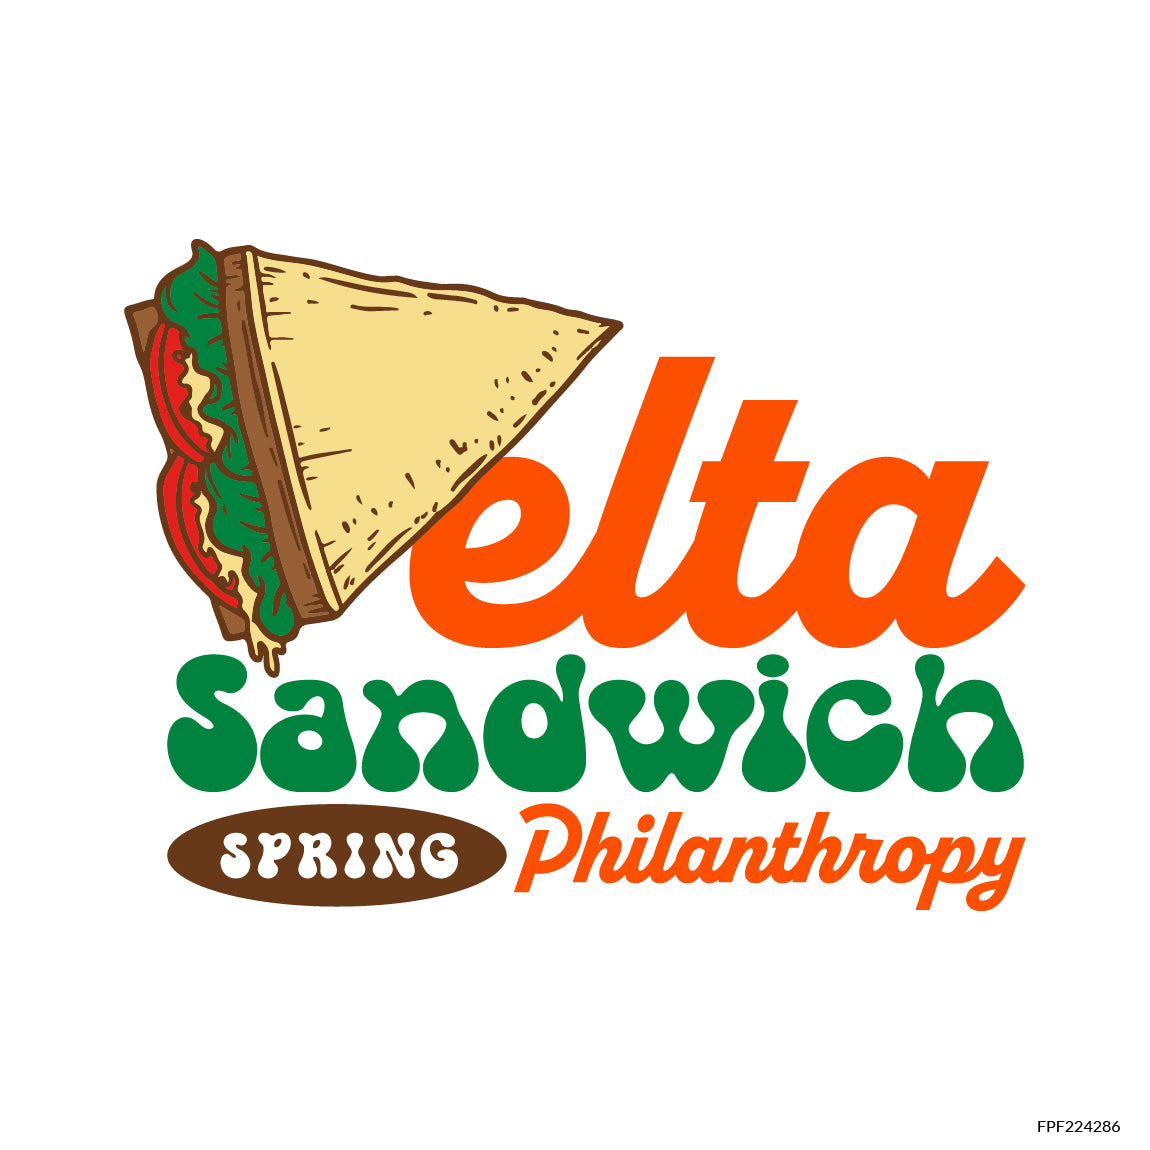 Delta Sandwich